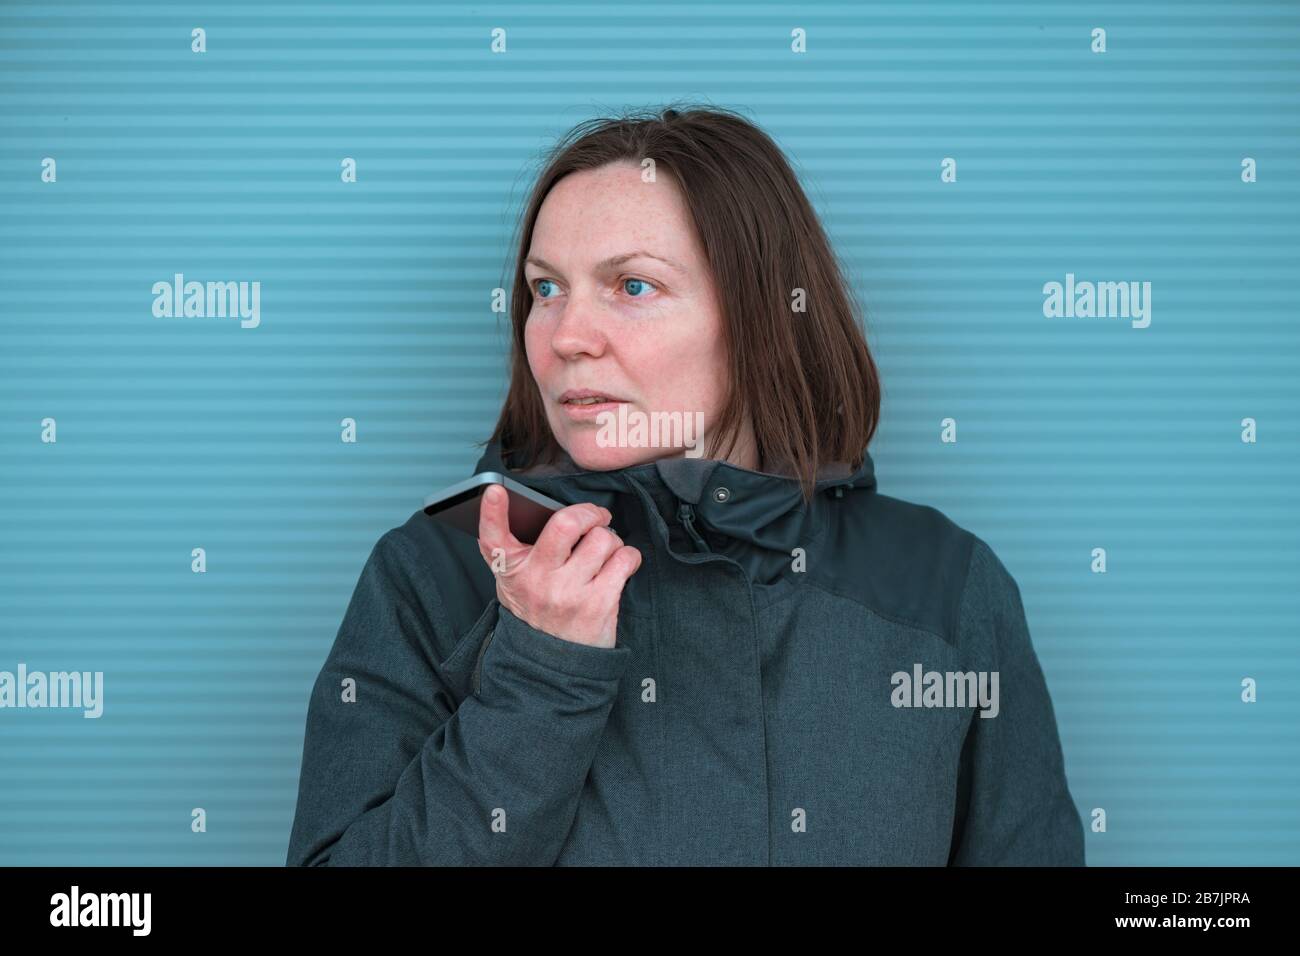 Lässige Frau, die mit dem Handy unterwegs auf der Straße in der modernen urbanen Umgebung kommuniziert, selektive Fokussierung Stockfoto